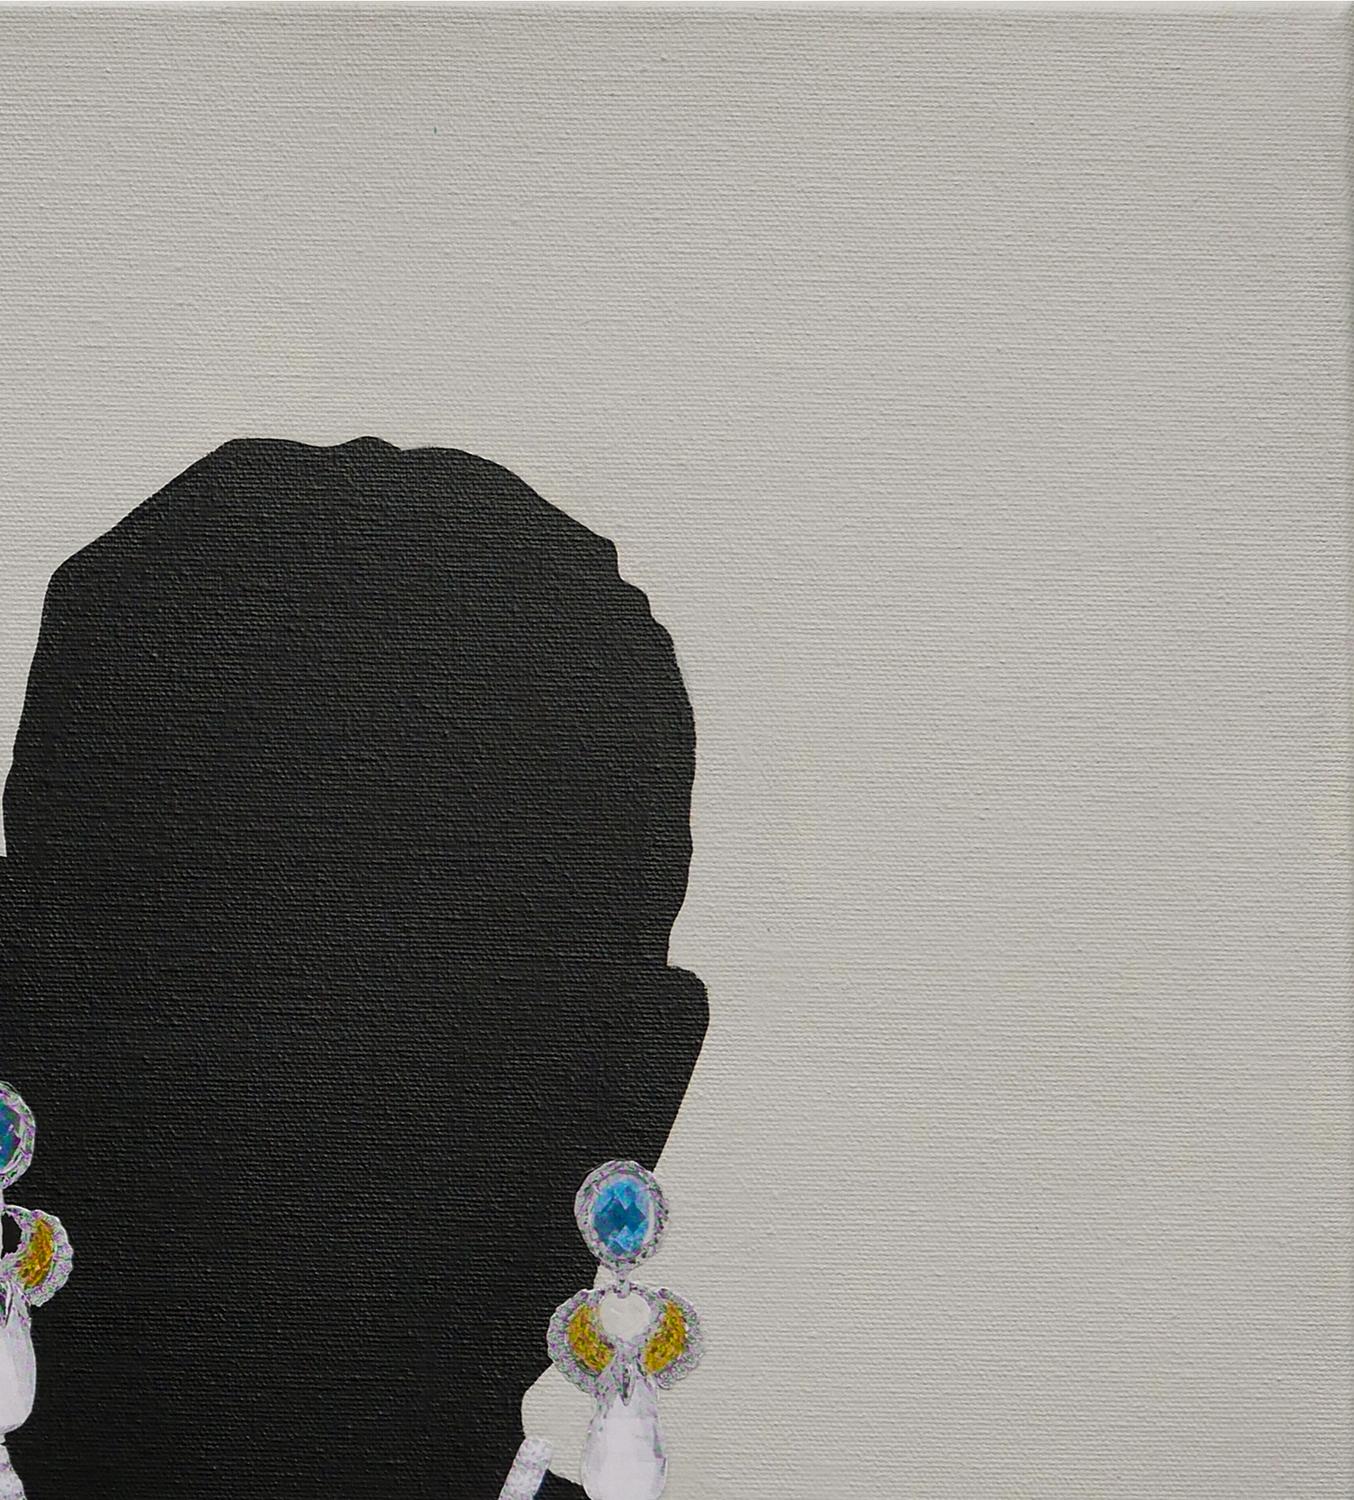 Graue, schwarze und weiße abstrakte zeitgenössische figurative Malerei des Künstlers Scott Woodard aus Houston, TX. Das Gemälde zeigt die Silhouette eines Mannes, der ein Paar gelbe und blaue Ohrringe und eine Fleur-de-lis-Kette trägt. Signiert,